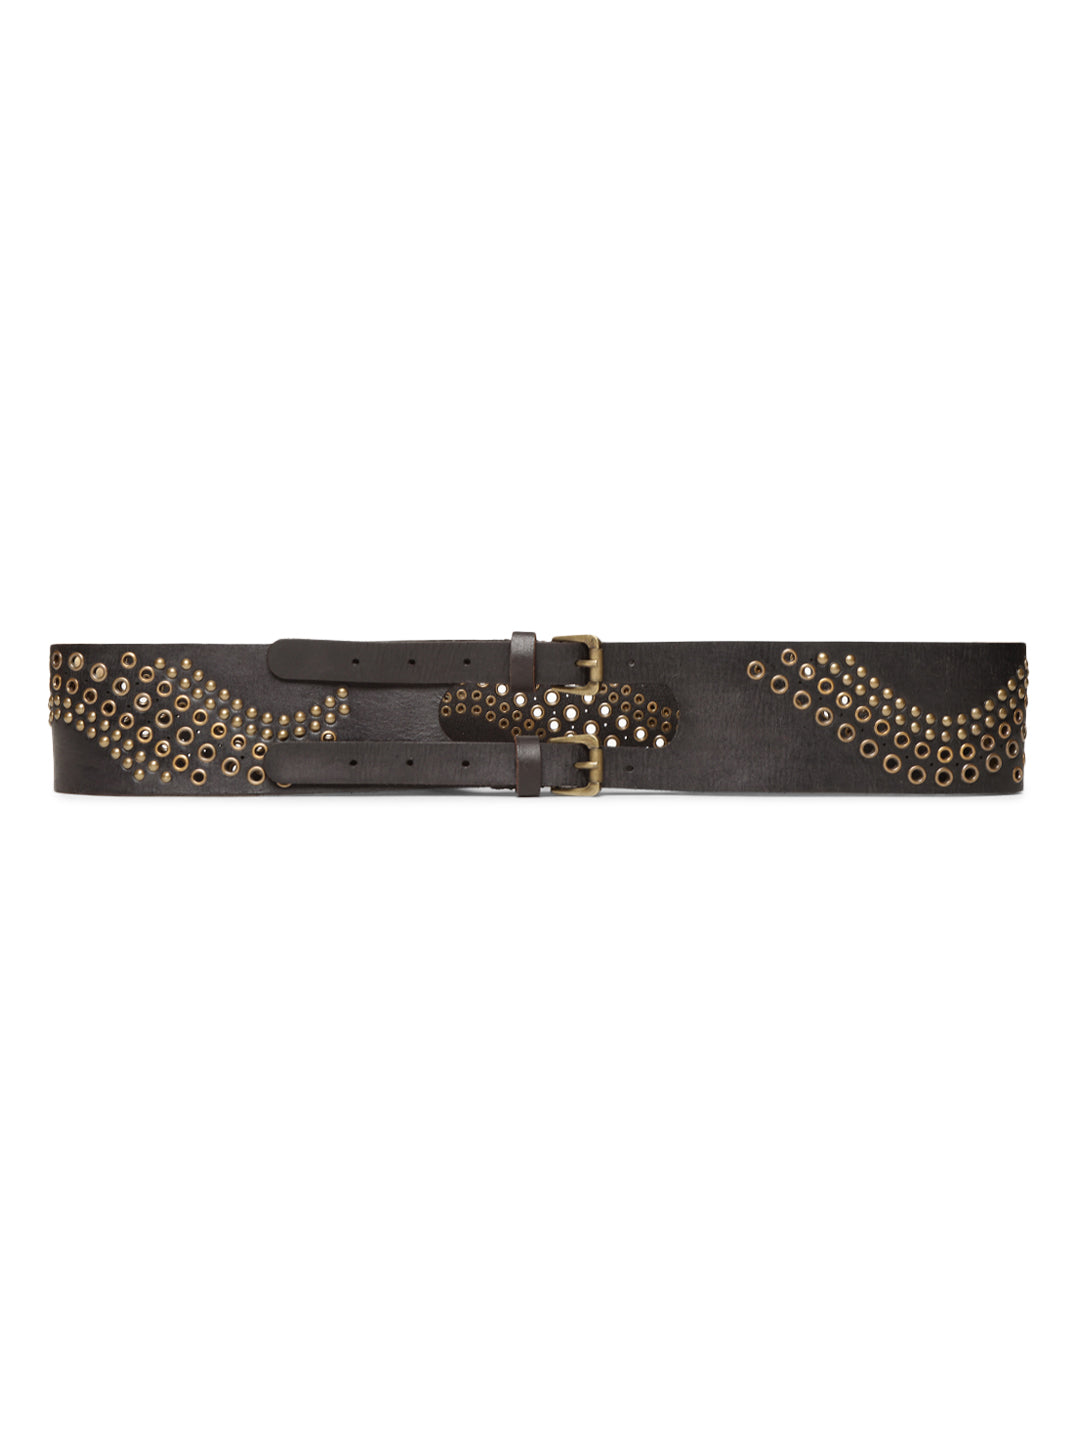 Black Studded Genuine Leather Belt For Women By Art N Vintage